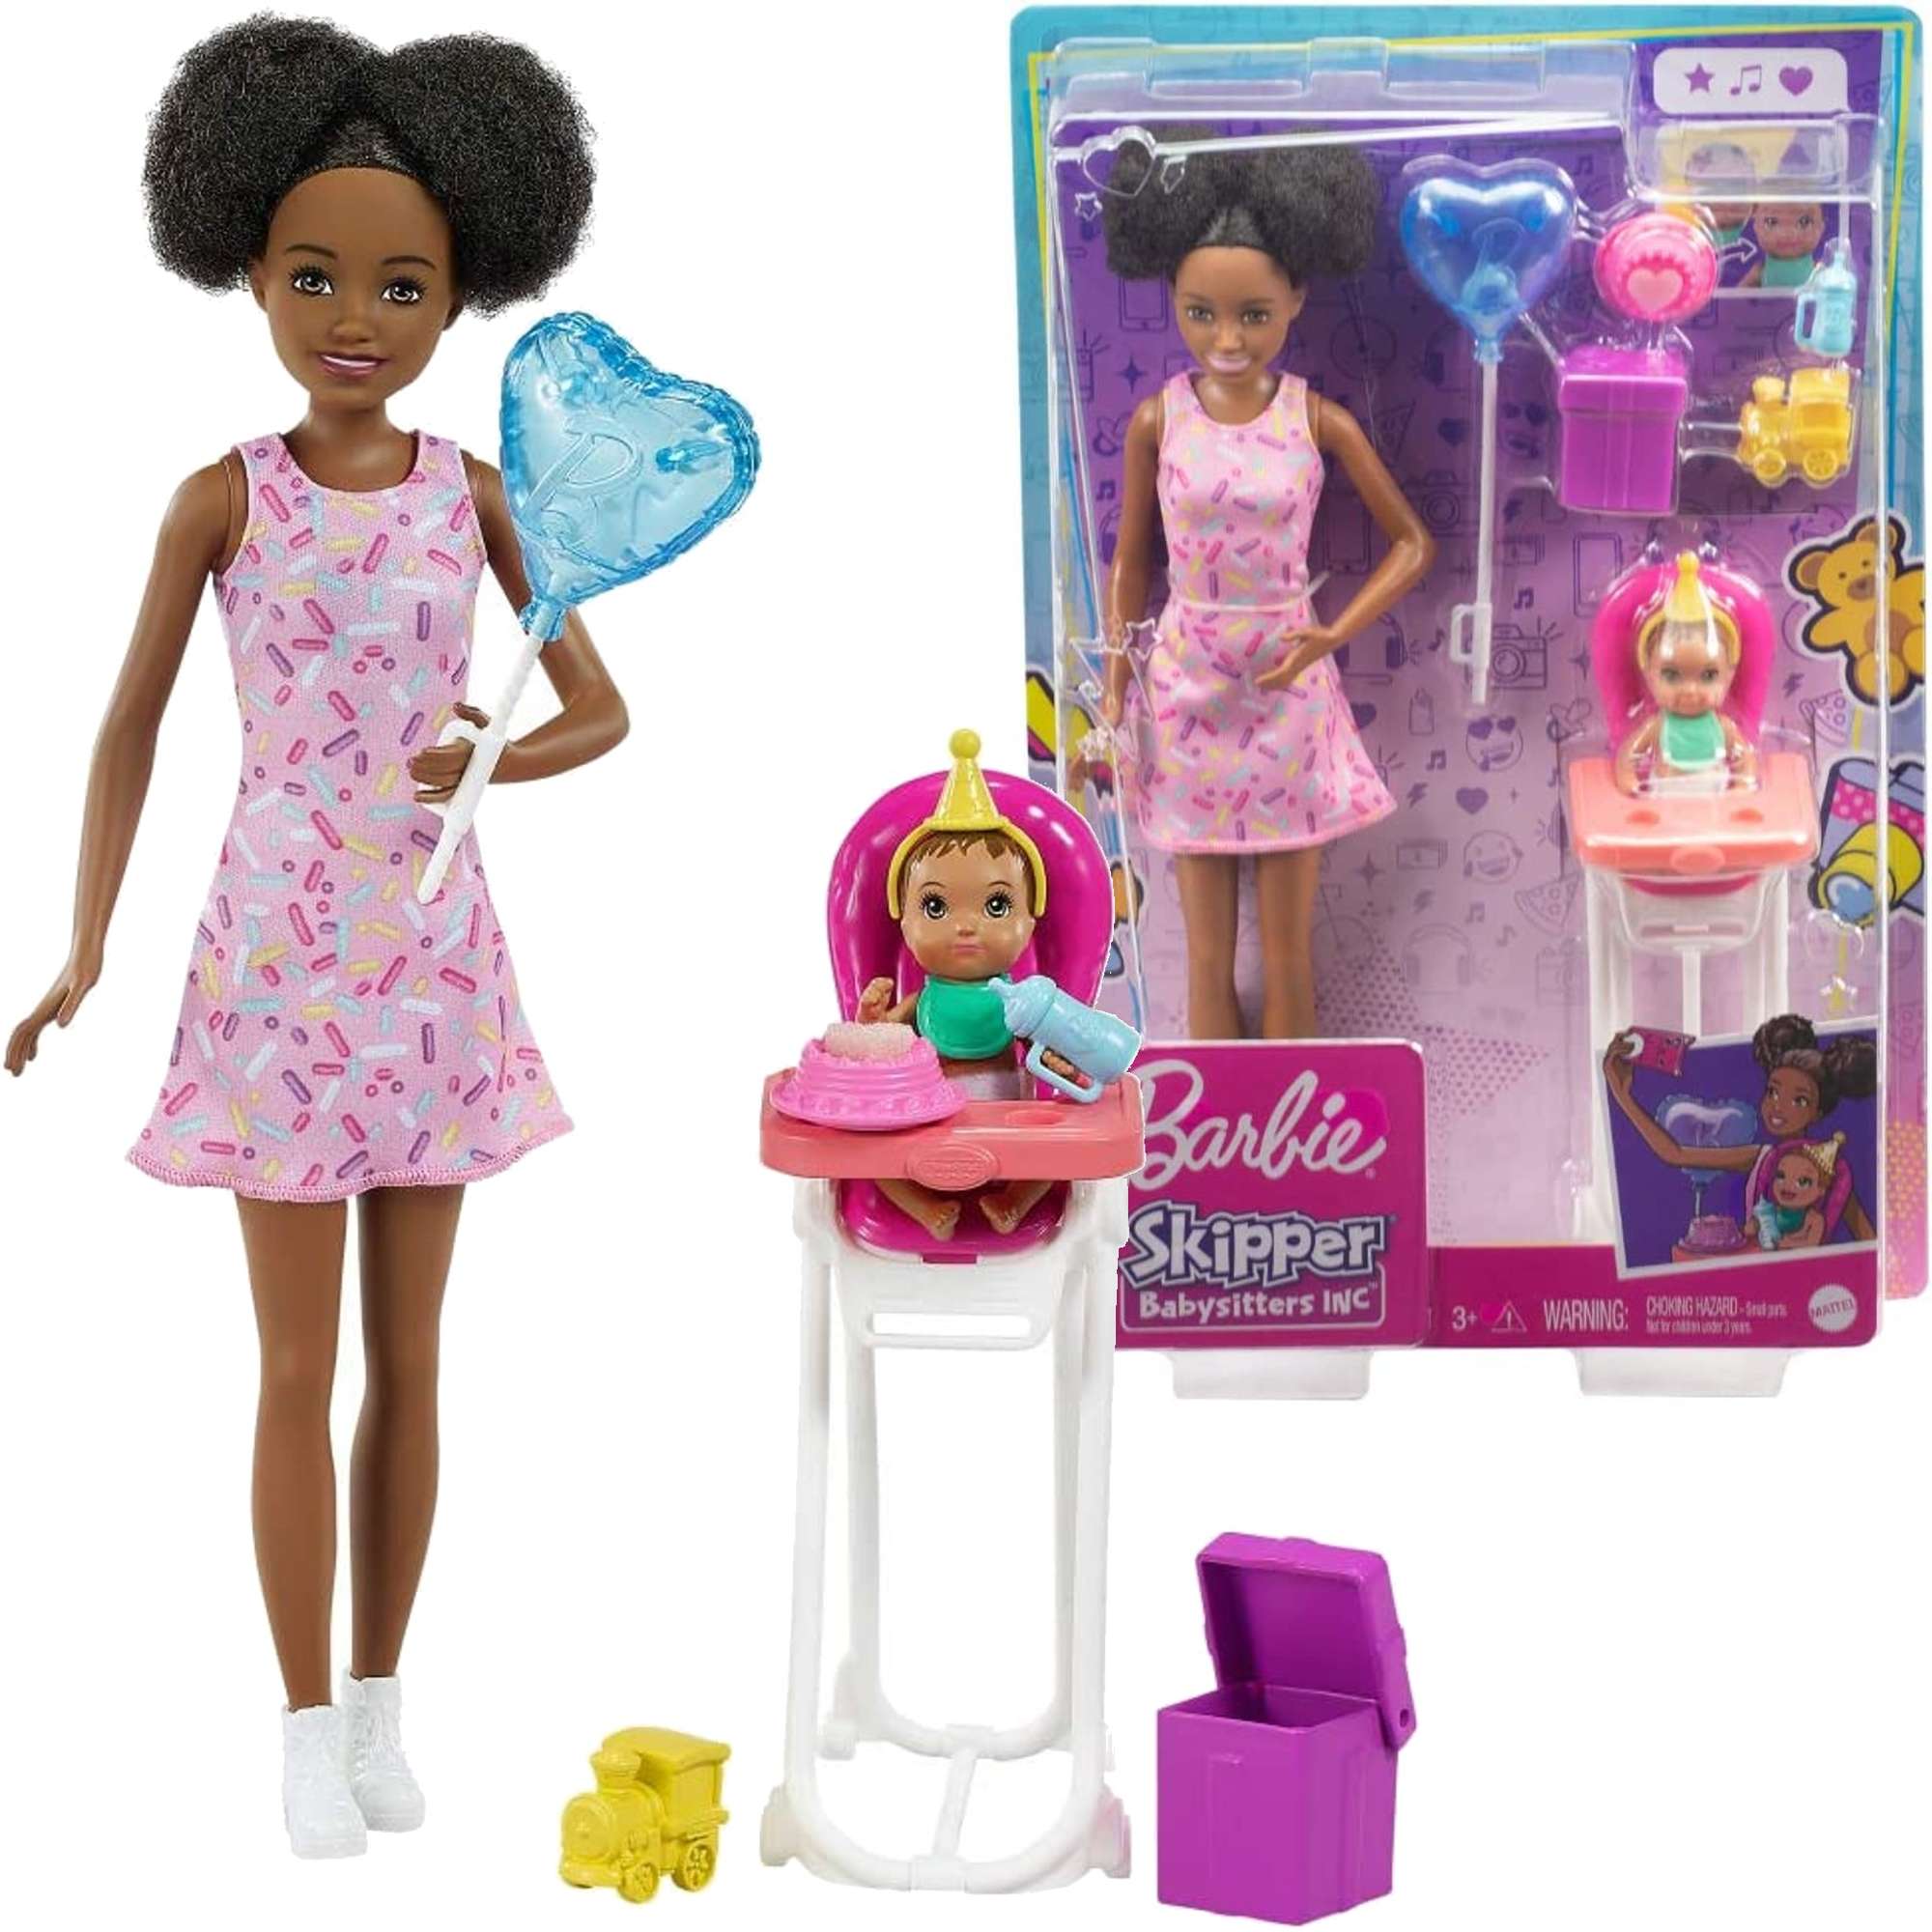 Barbie Opiekunka lalka Skipper zestaw z krzesekiem do karmienia